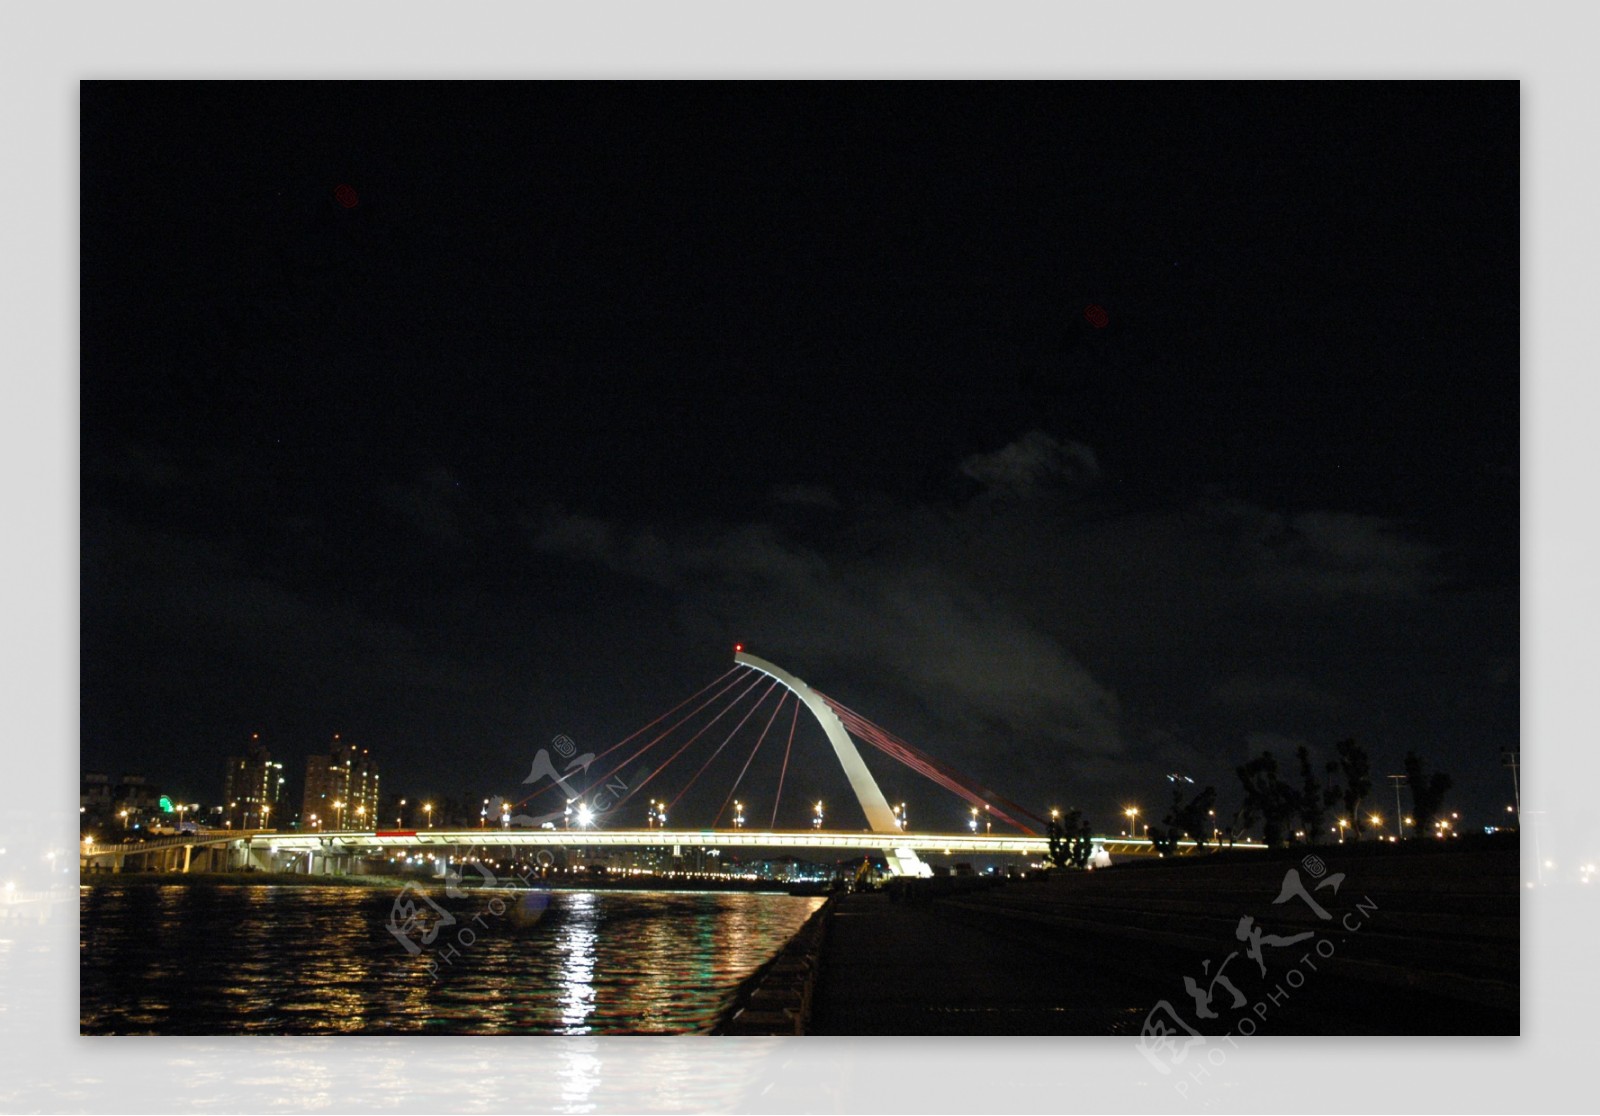 绝美台湾大直桥景观图片